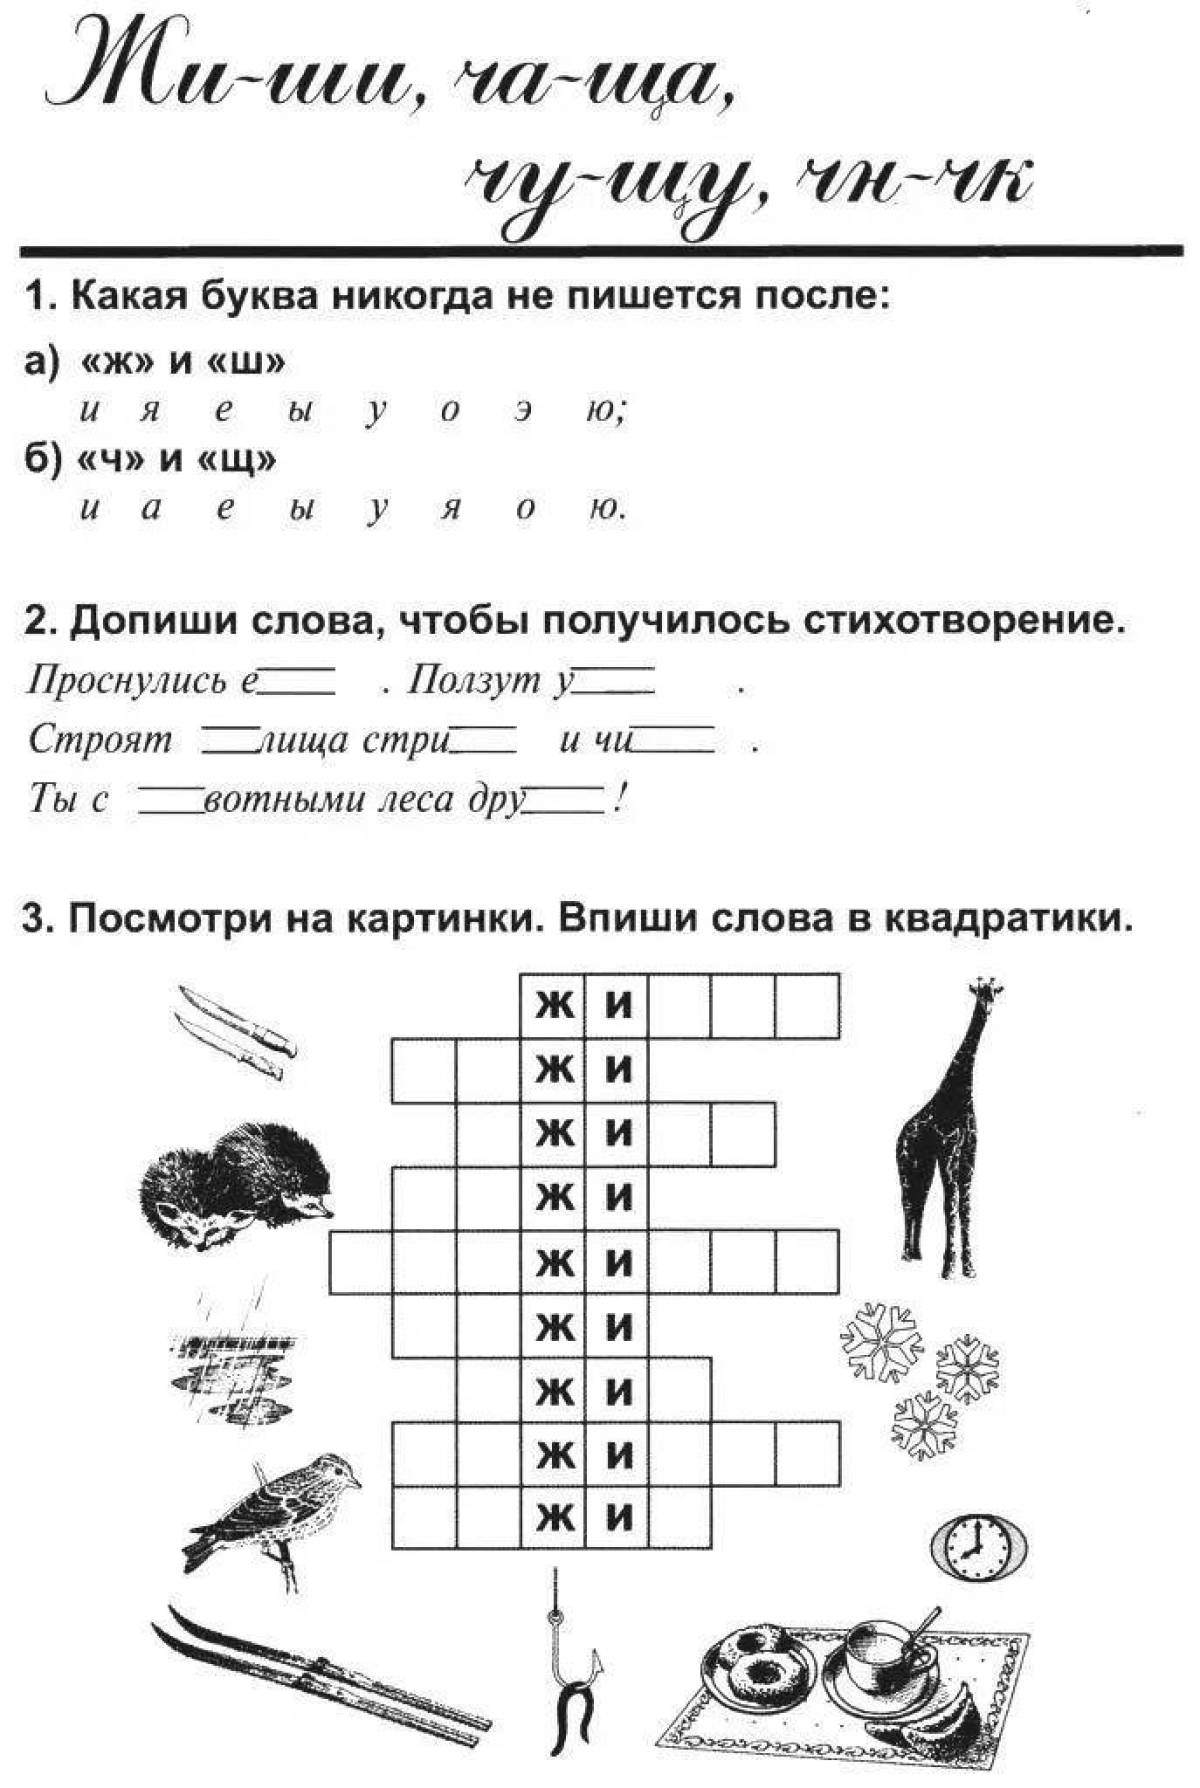 Русский язык 2 класс задания жи ши